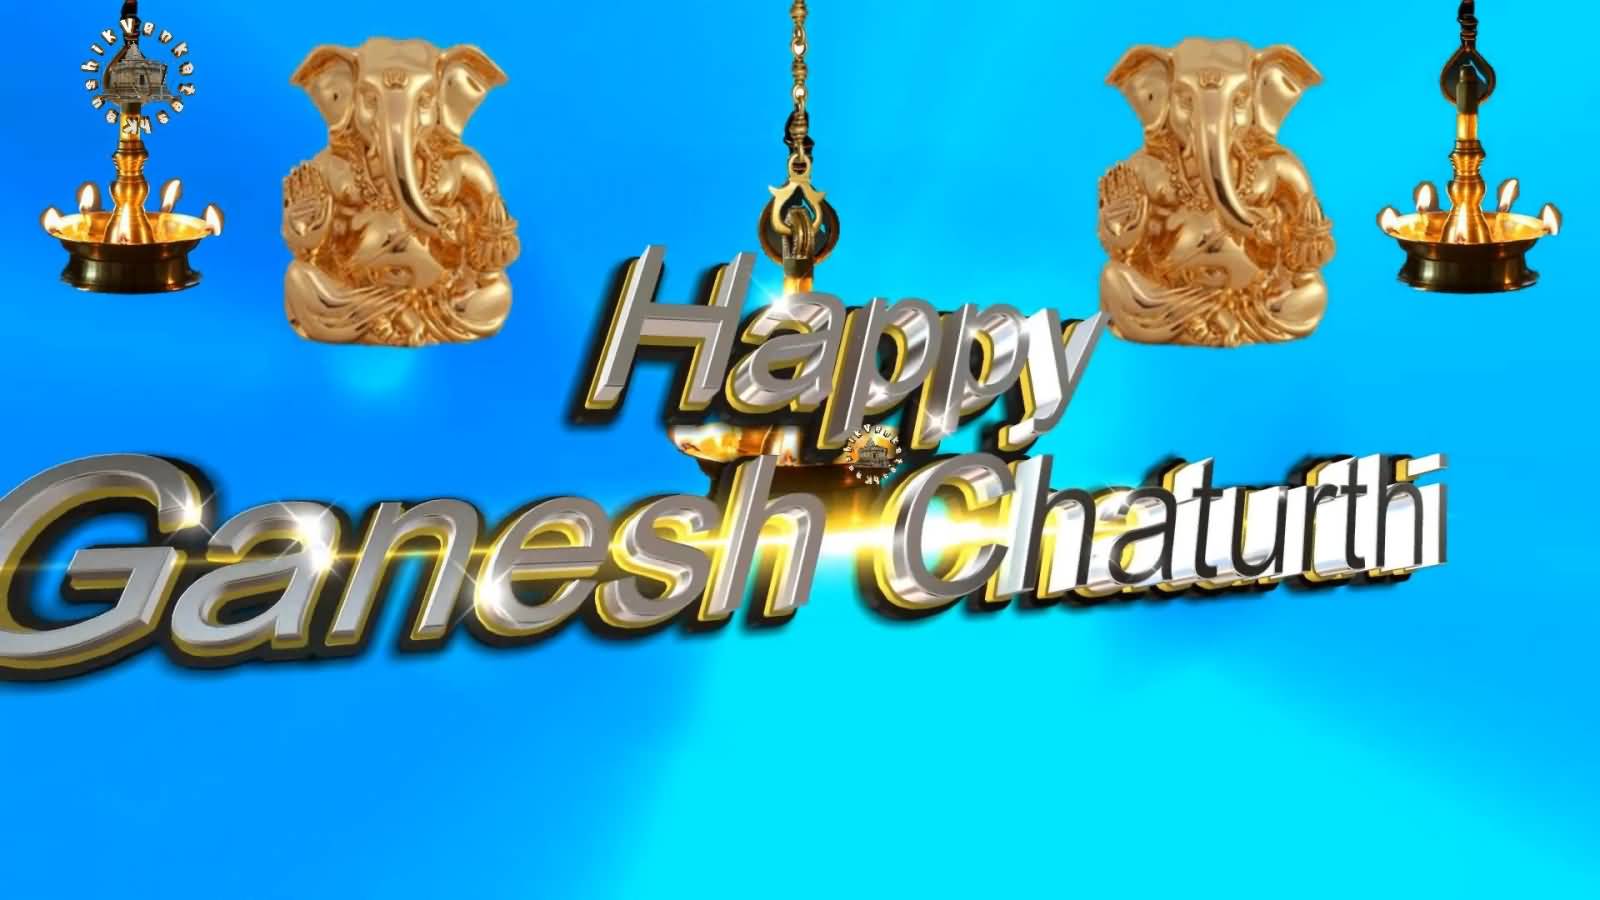 Happy Ganesh Chaturthi 2017